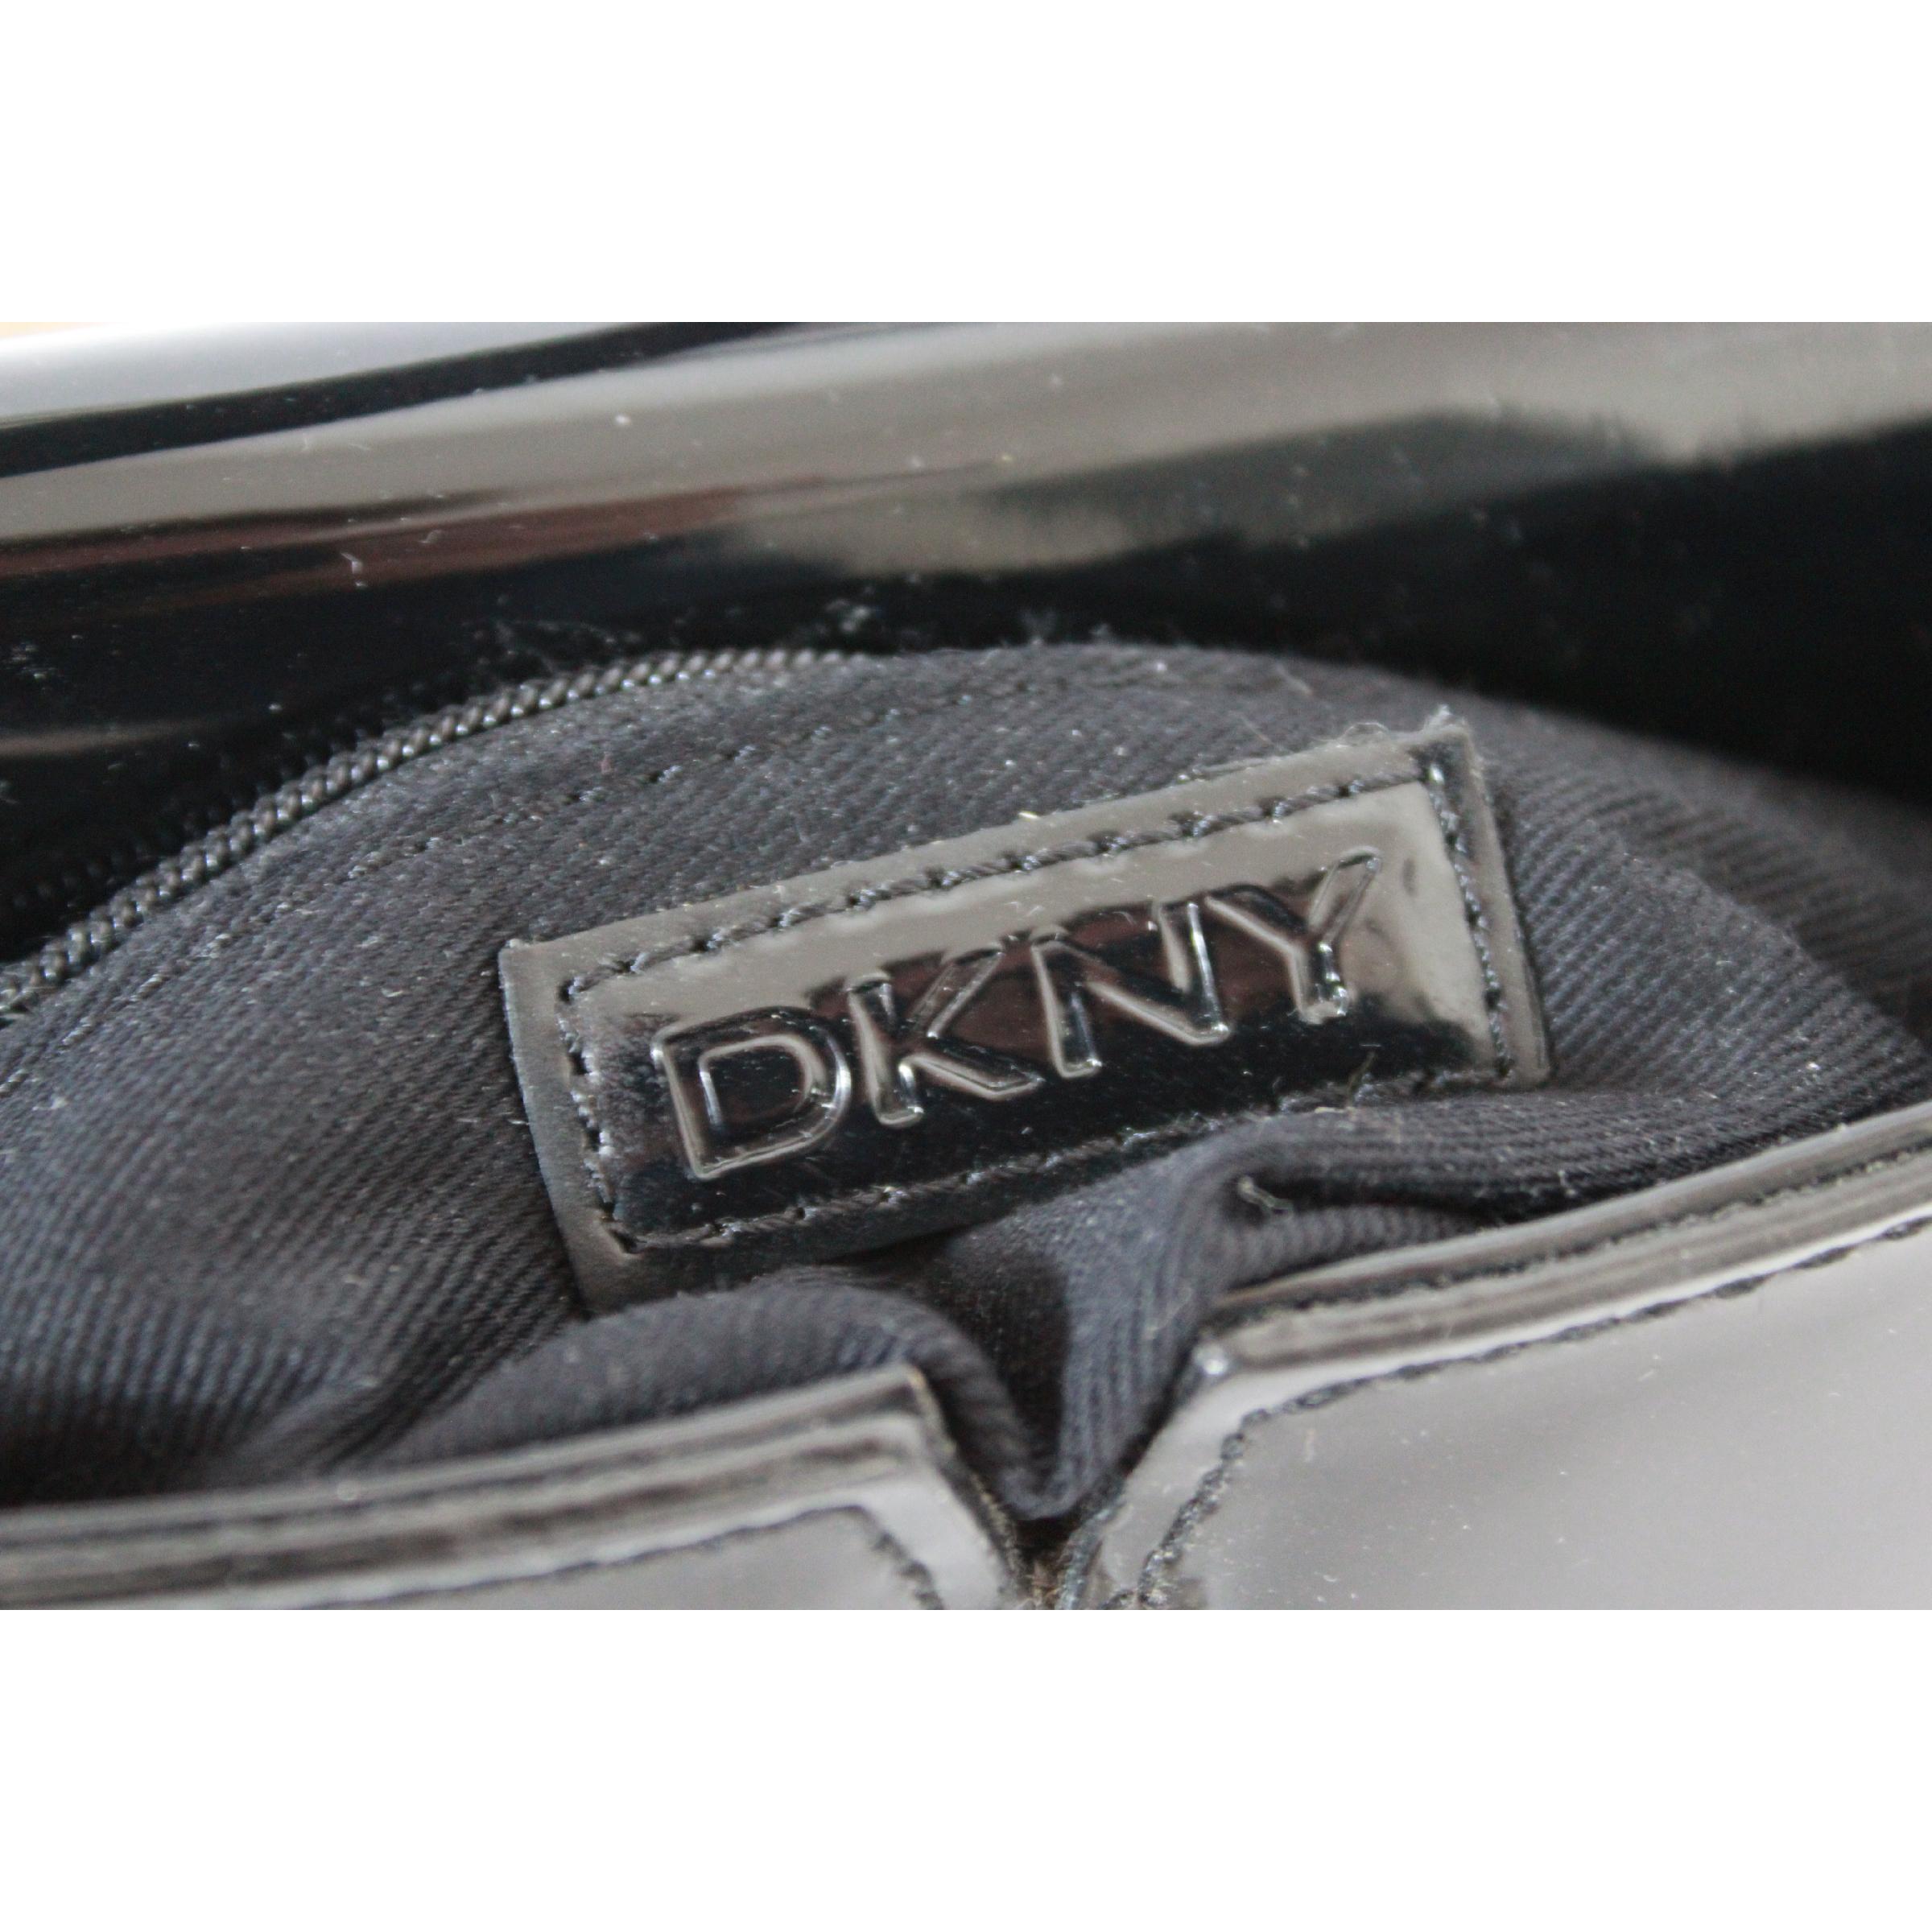 DKNY Donna Karan Black Rigid Patent Leather Shoulder Bag  2